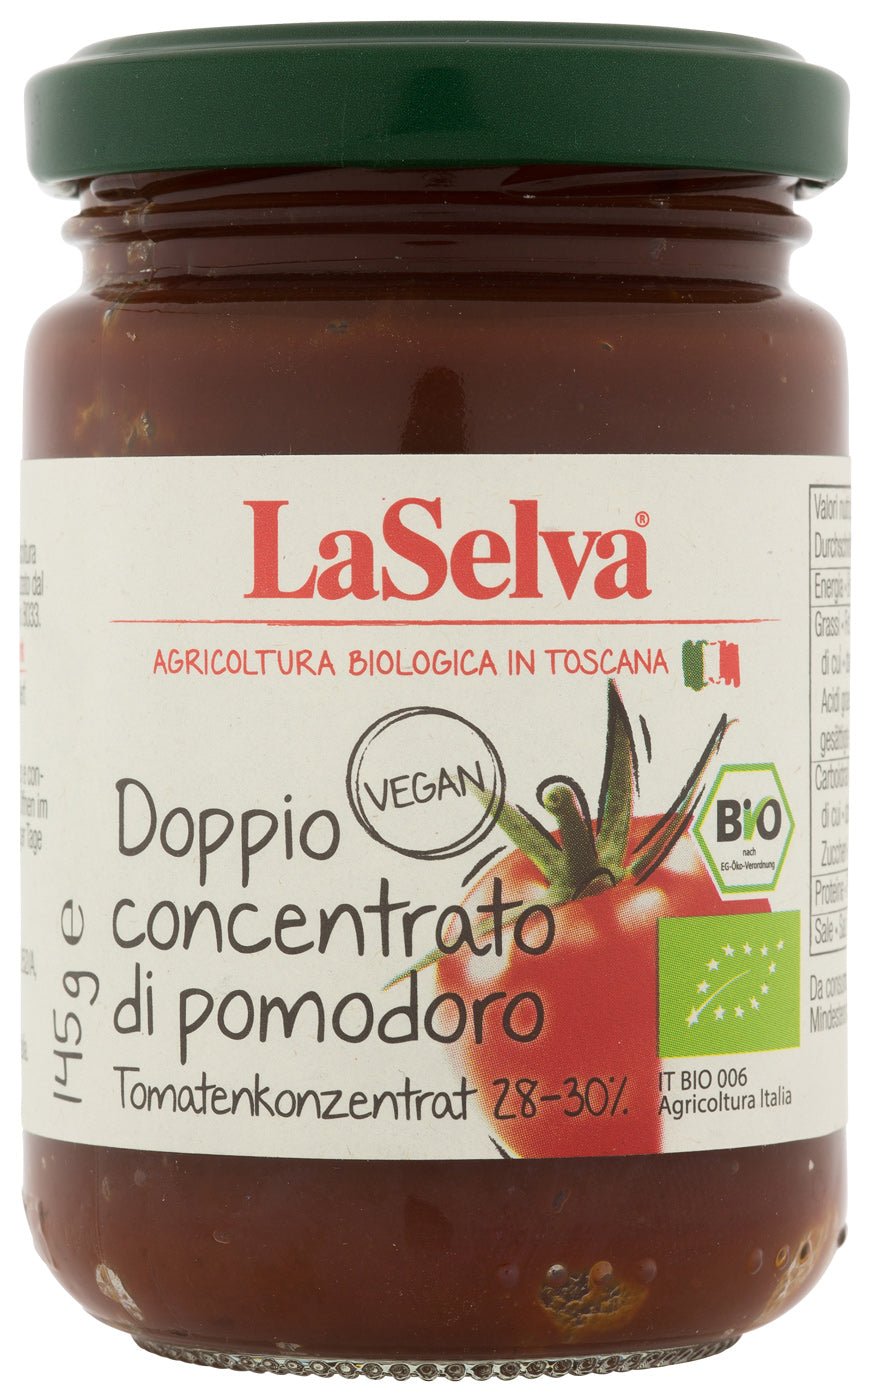 Bio Doppio concentrato di pomodoro, Tomtatenkonzentrat doppelt konzentriert, 145 g